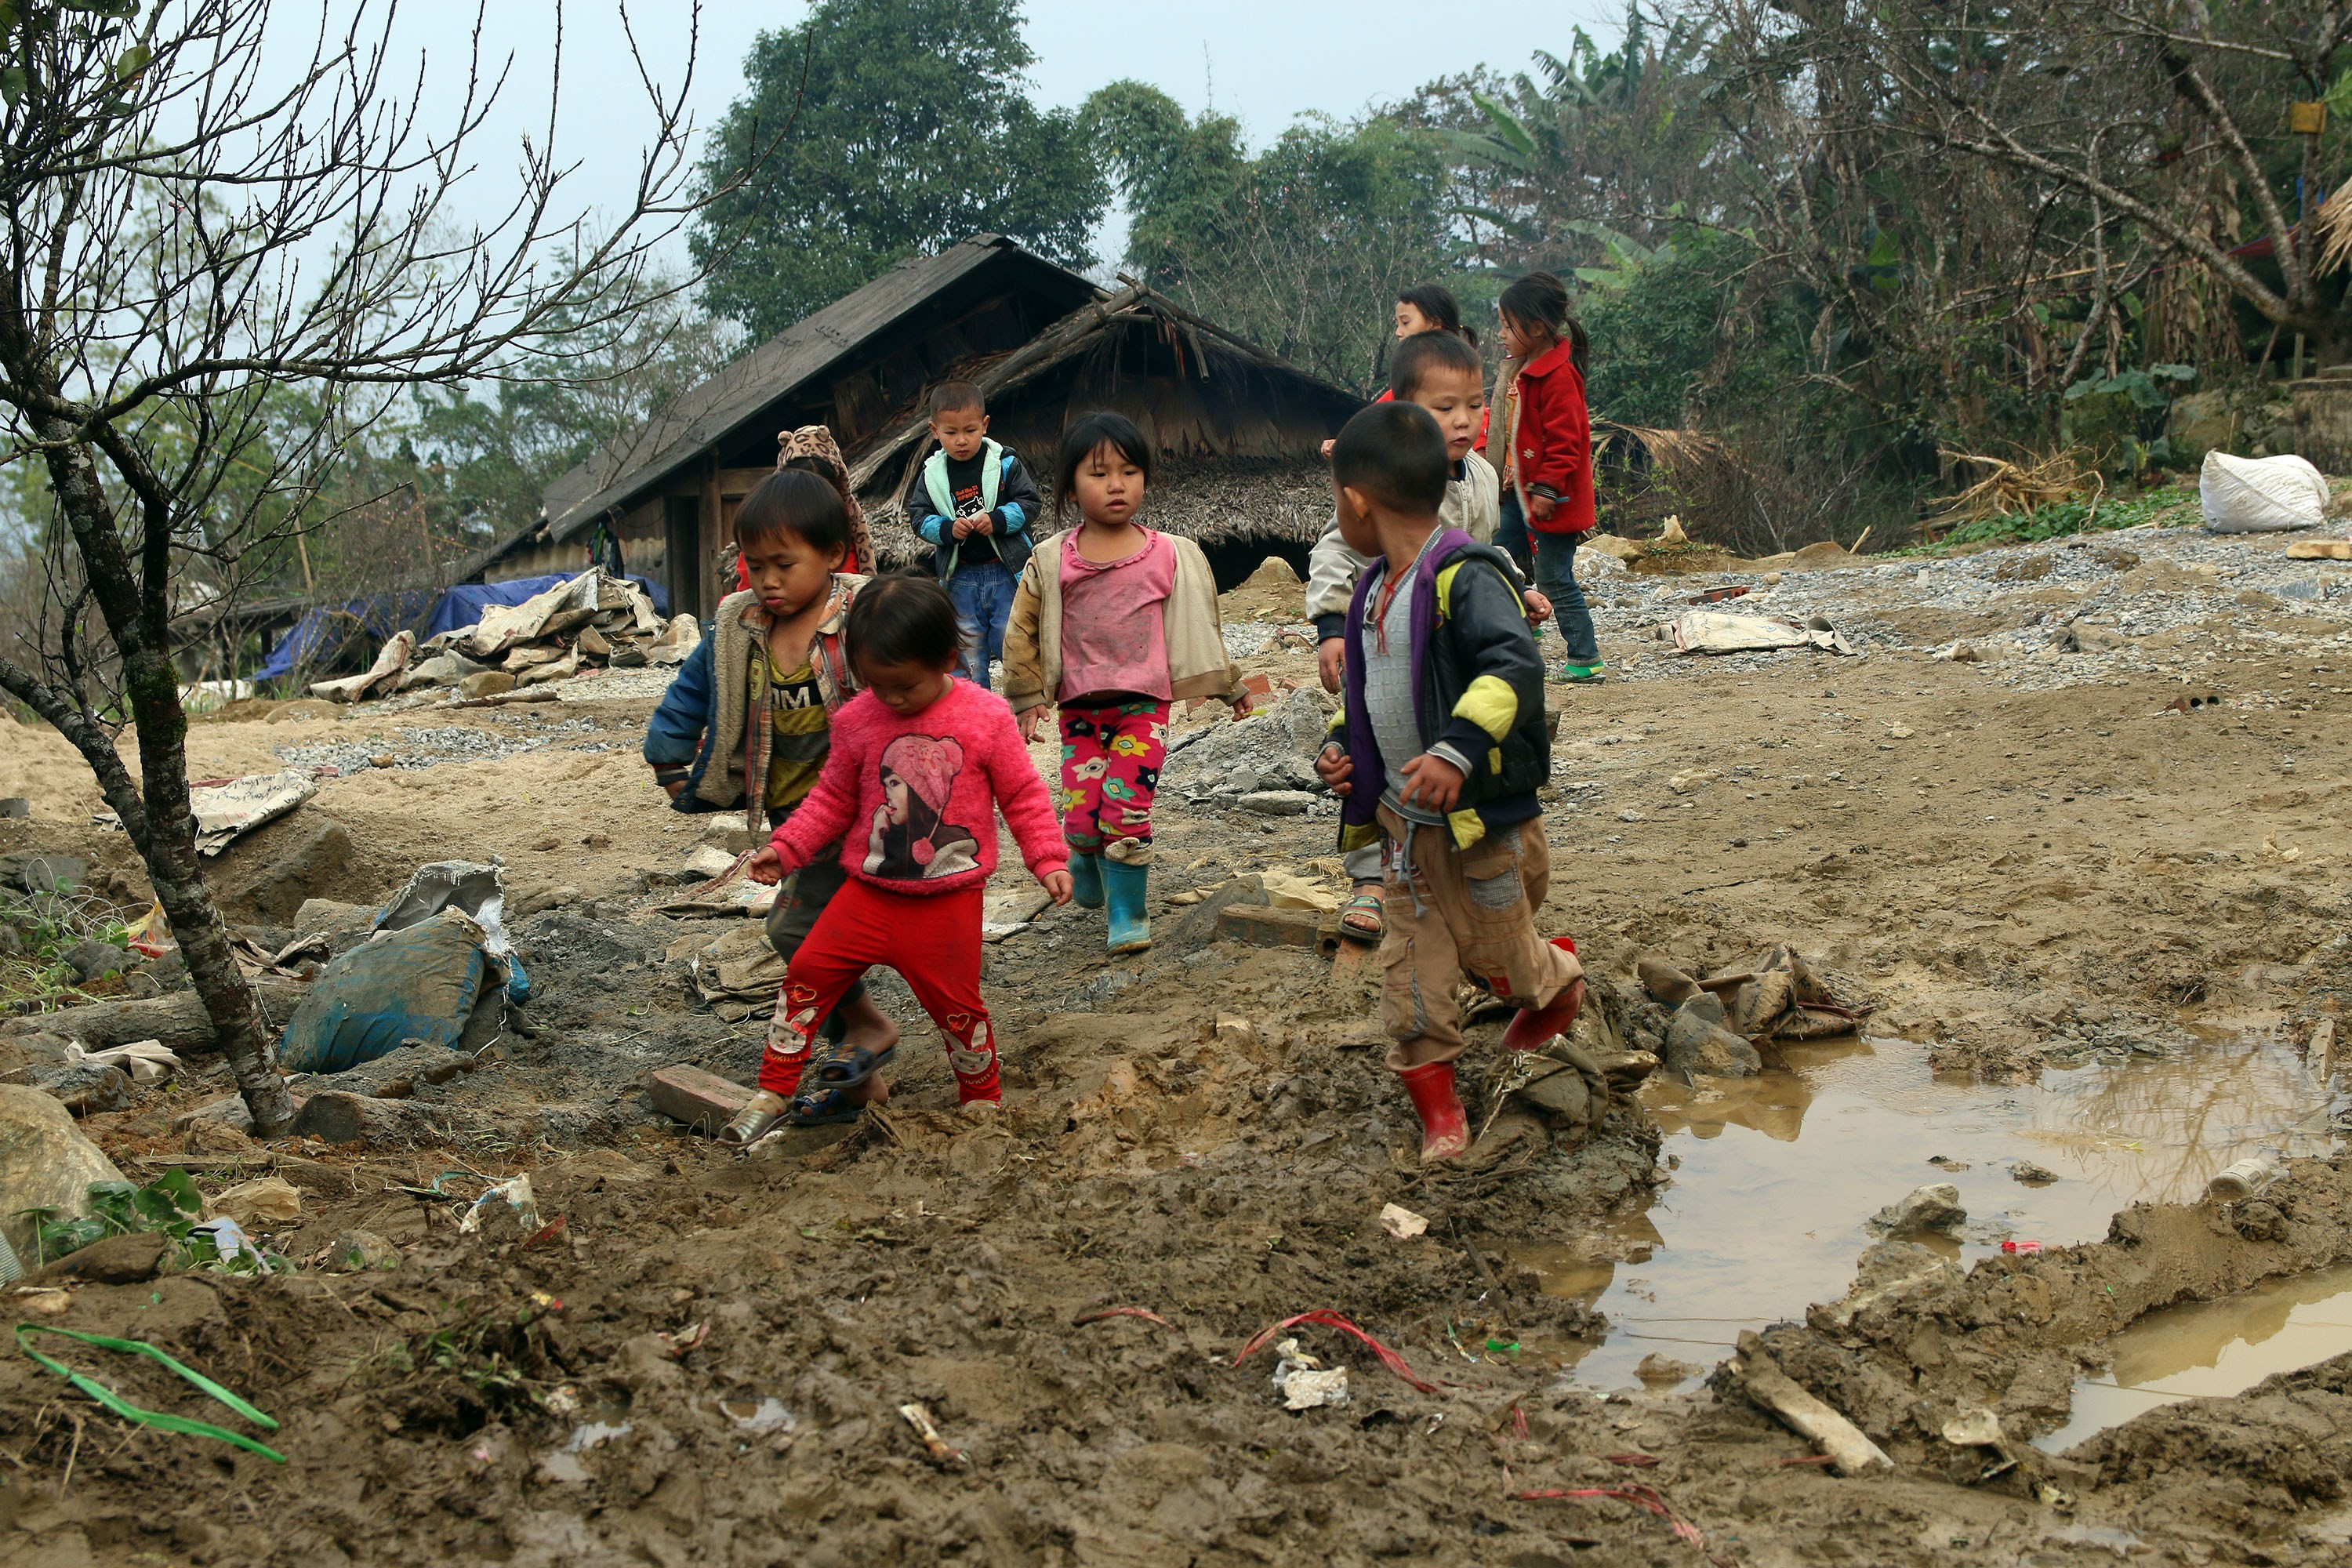 Những đứa trẻ người Mông quần áo mong manh chơi bên bãi đất trống bùn lầy ở bản. Ảnh: Đào Thọ